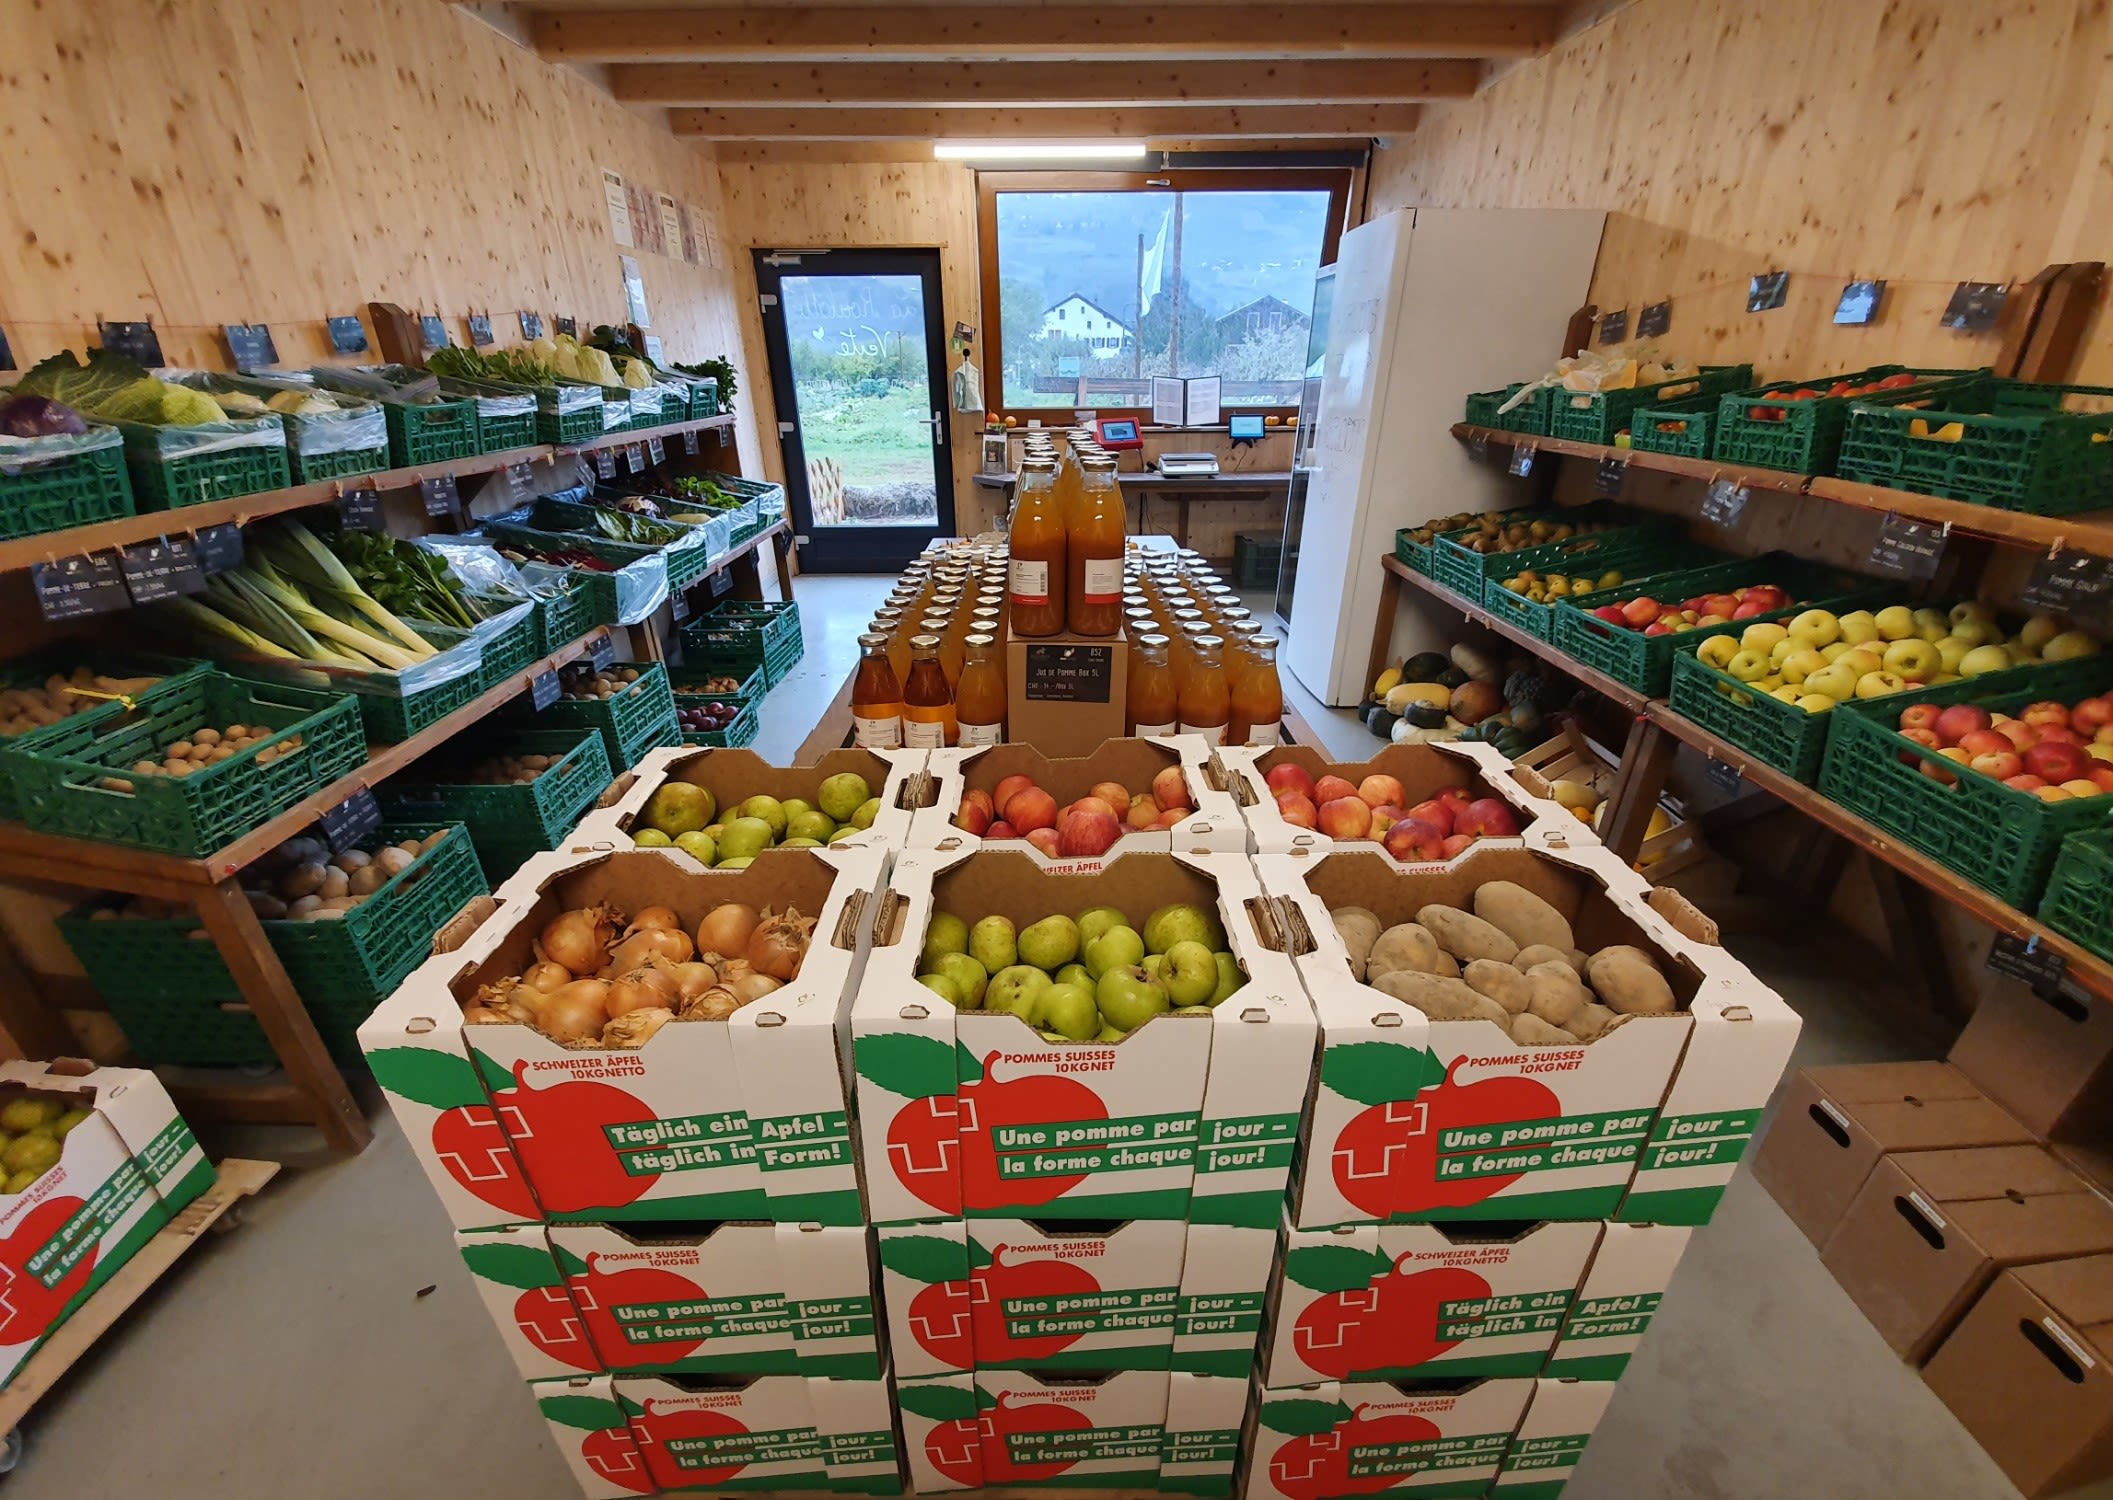 Vente directe de fruits et de légumes en Valais. Bioterroir. Valais, Suisse